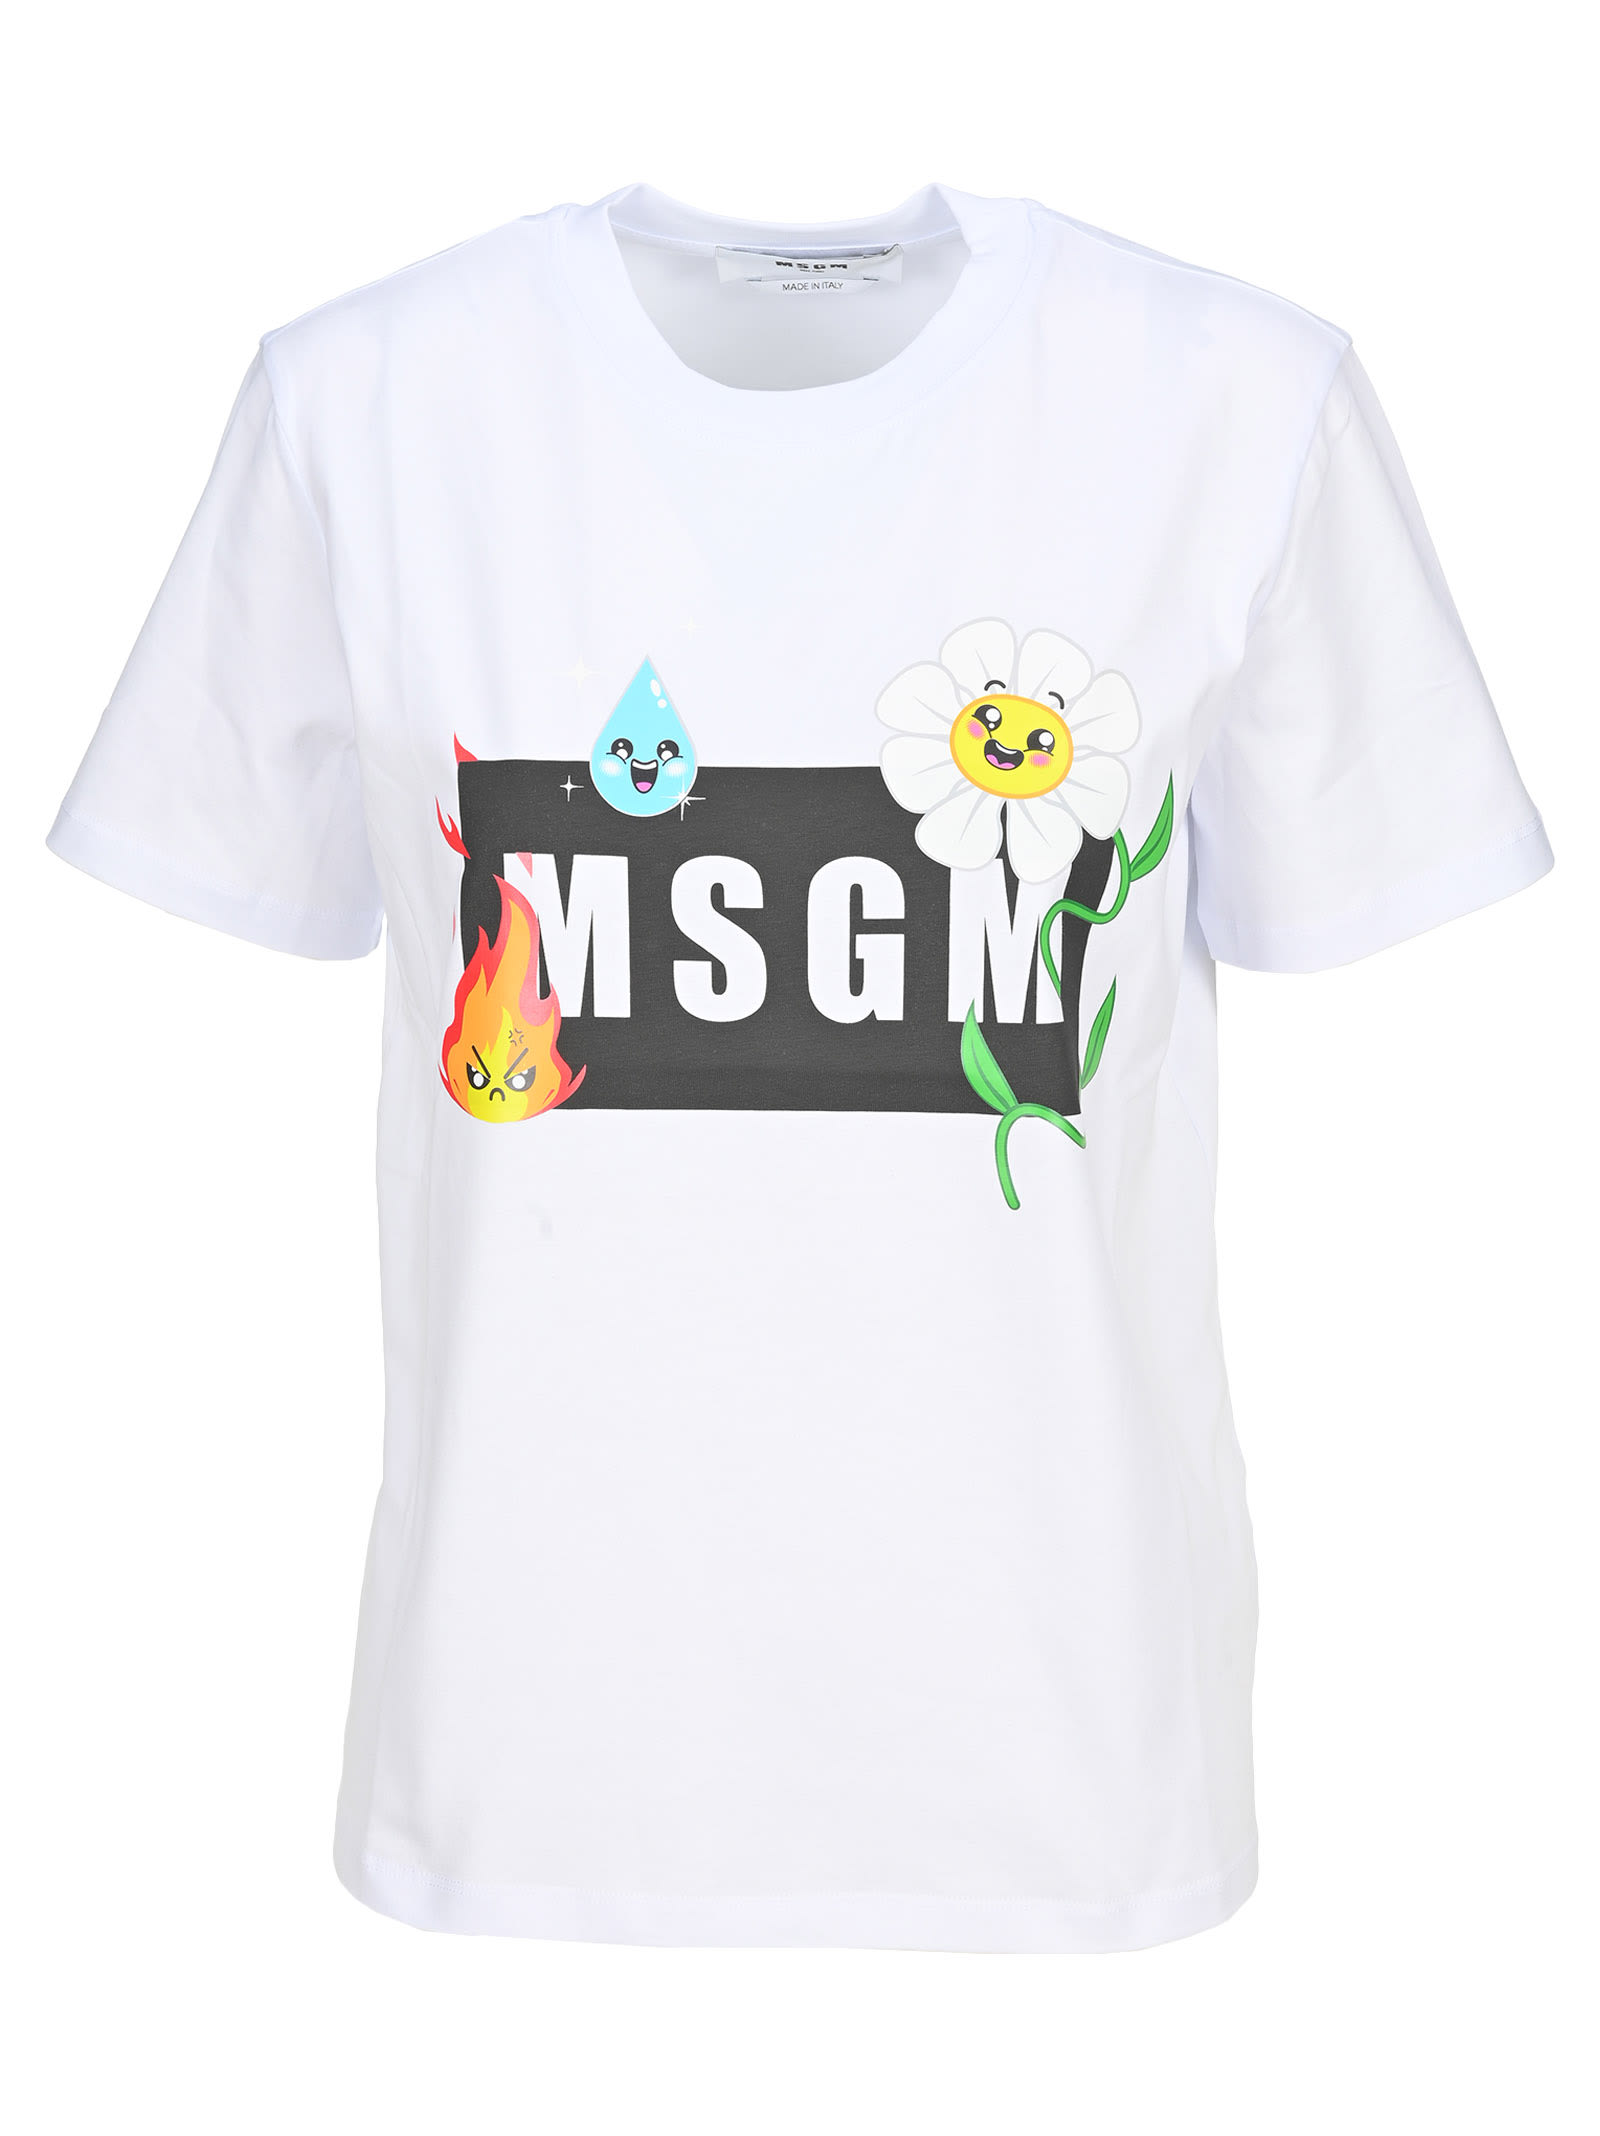 Msgm T-shirt With The Msgm emoji Logo Box